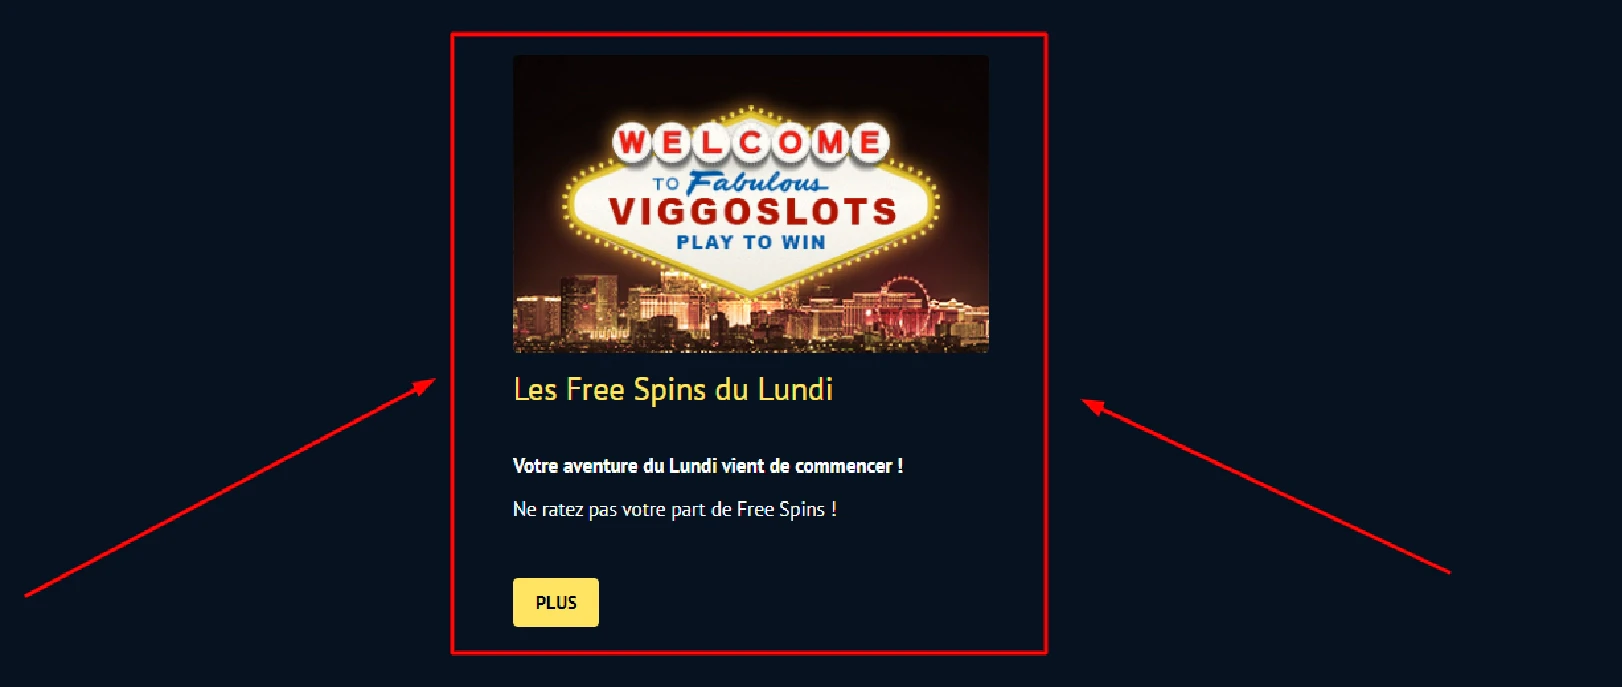 Les free spins du lundi sur Viggoslots est une promotion